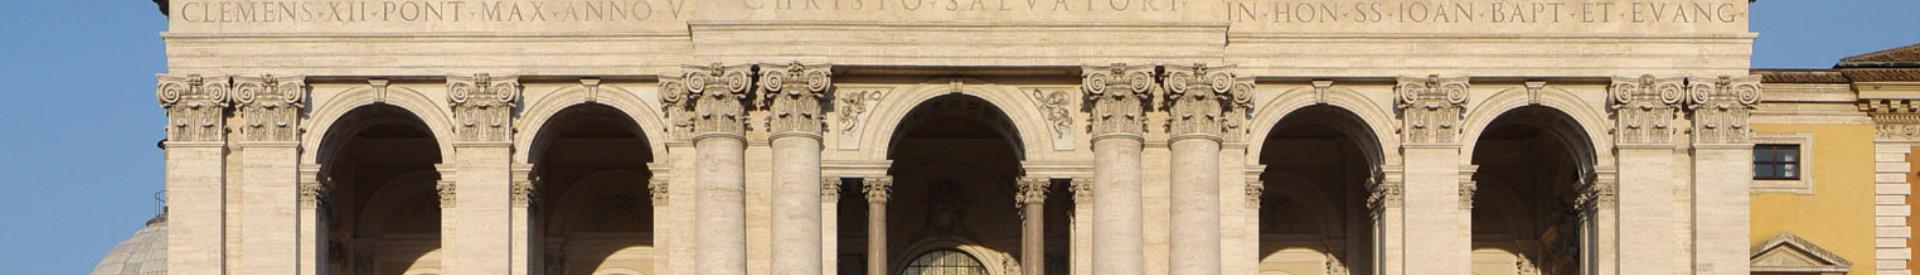 Prenota la tua camera al Best Western Hotel Piccadilly! A 5 minuti a piedi potrai ammirare la splendida chiesa di San Giovanni in Laterano, la più antica e importante Basilica d'Occidente.